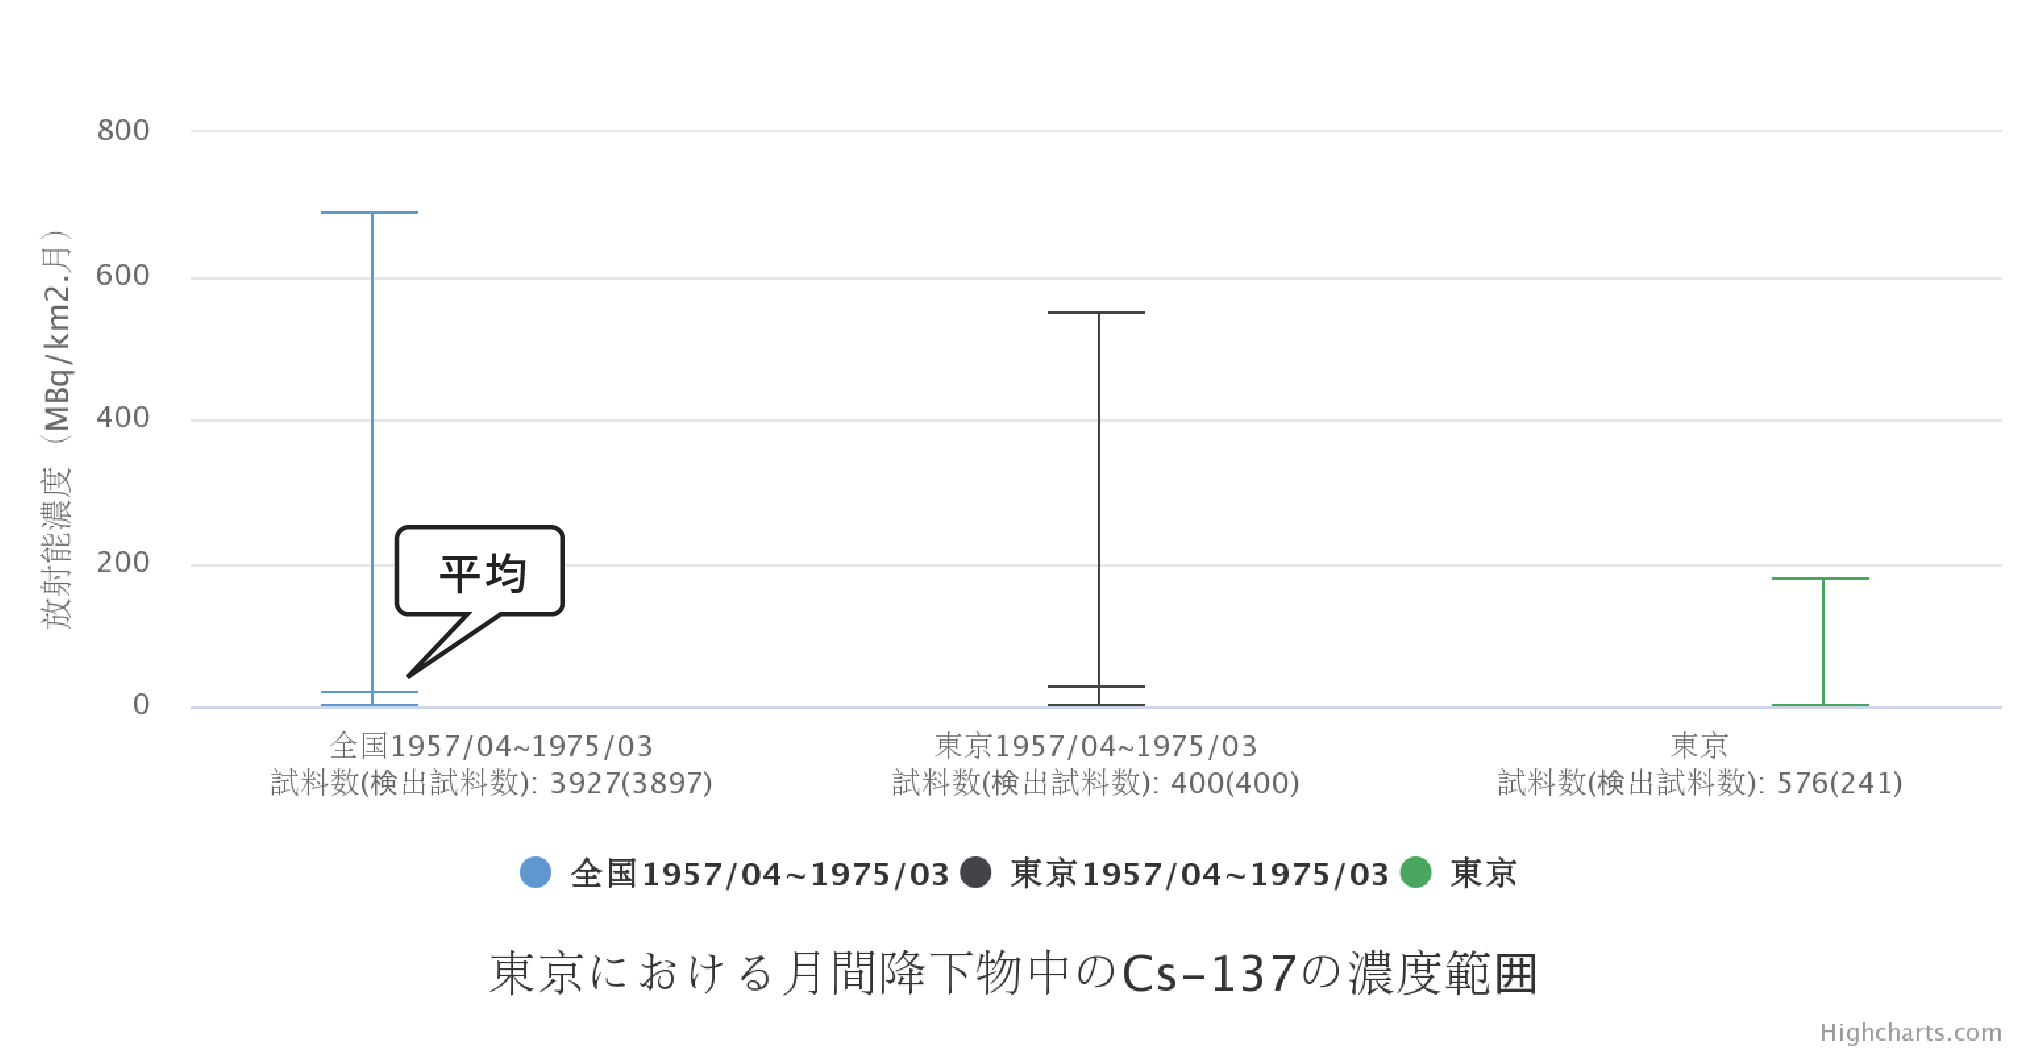 東京における月間降下物中のCs-137の濃度範囲